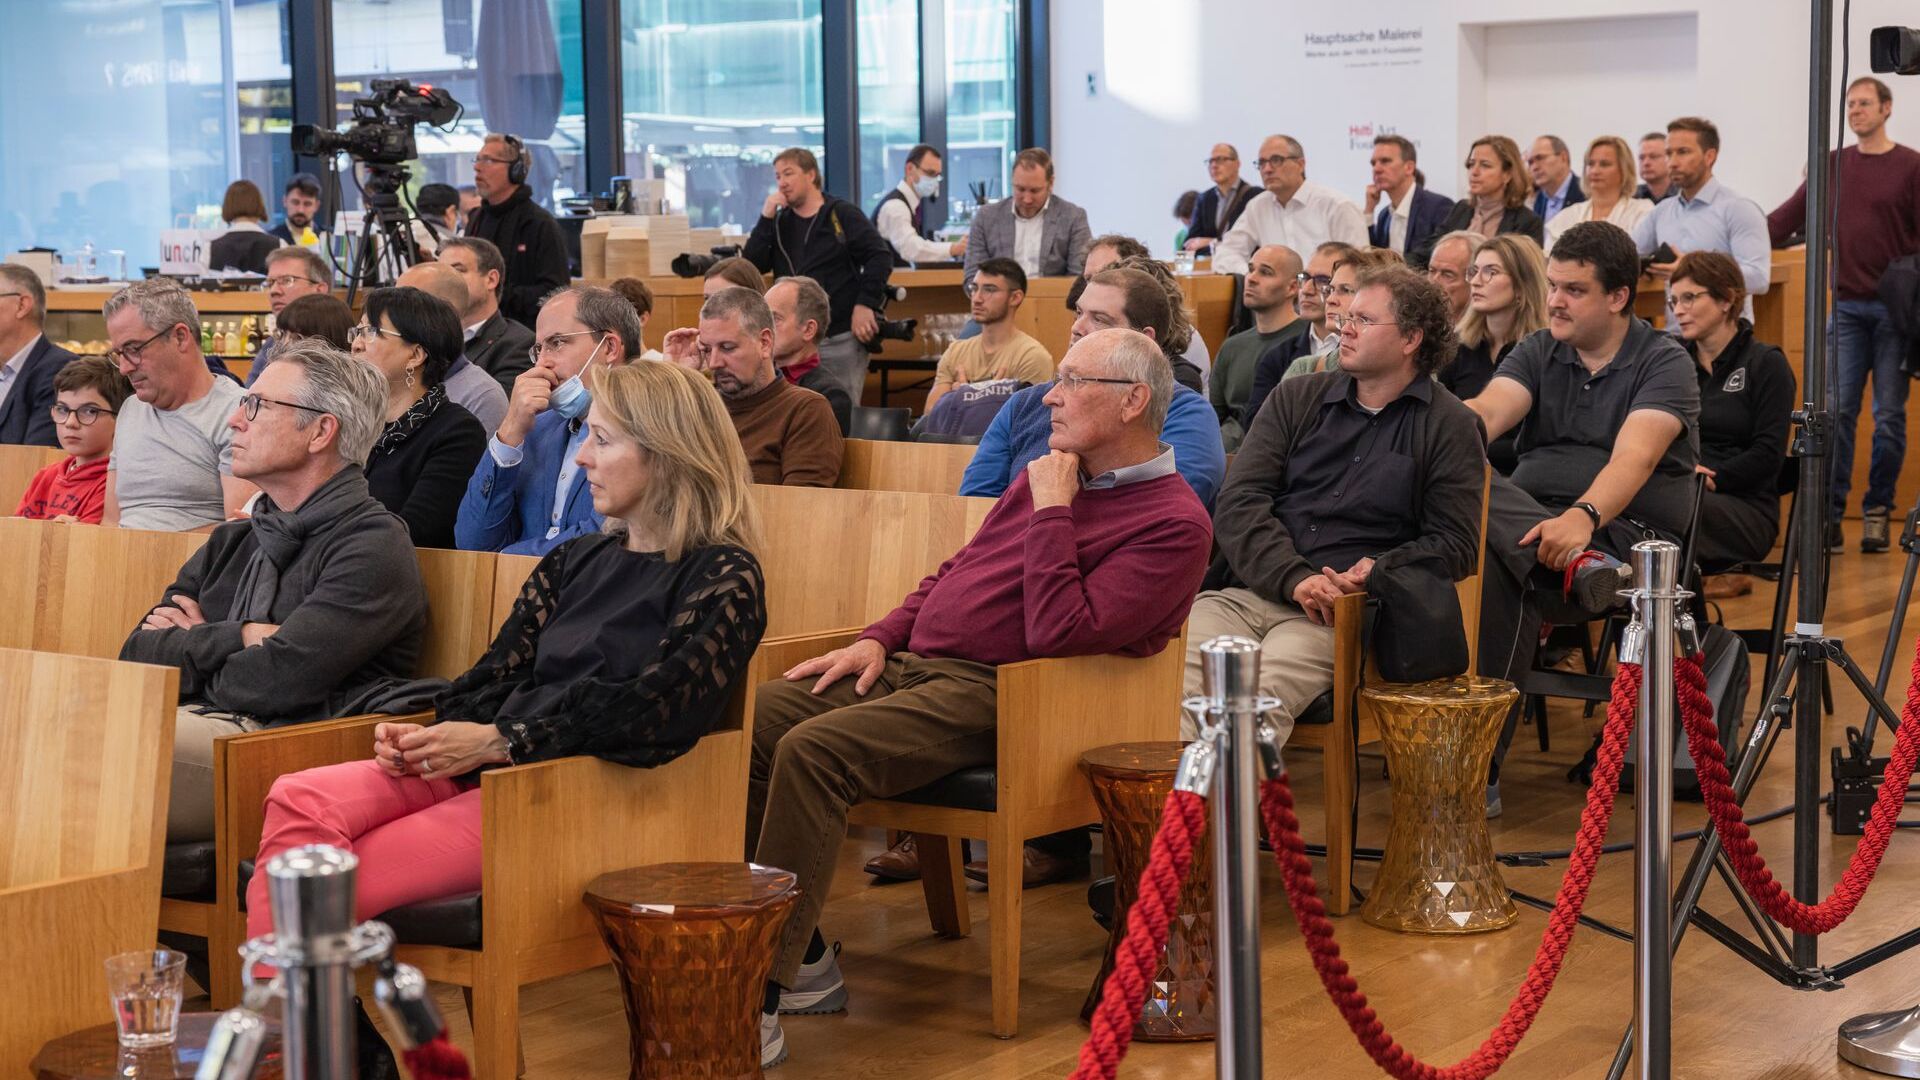 „Дигиталтаг Вадуз“, који је Музеј уметности главног града Кнежевине Лихтенштајн дочекао у суботу 6. новембра 2021, изазвао је ентузијазам јавности и говорника у аналогији са „Дигиталним даном Швајцарске“ следећег дана, 10.